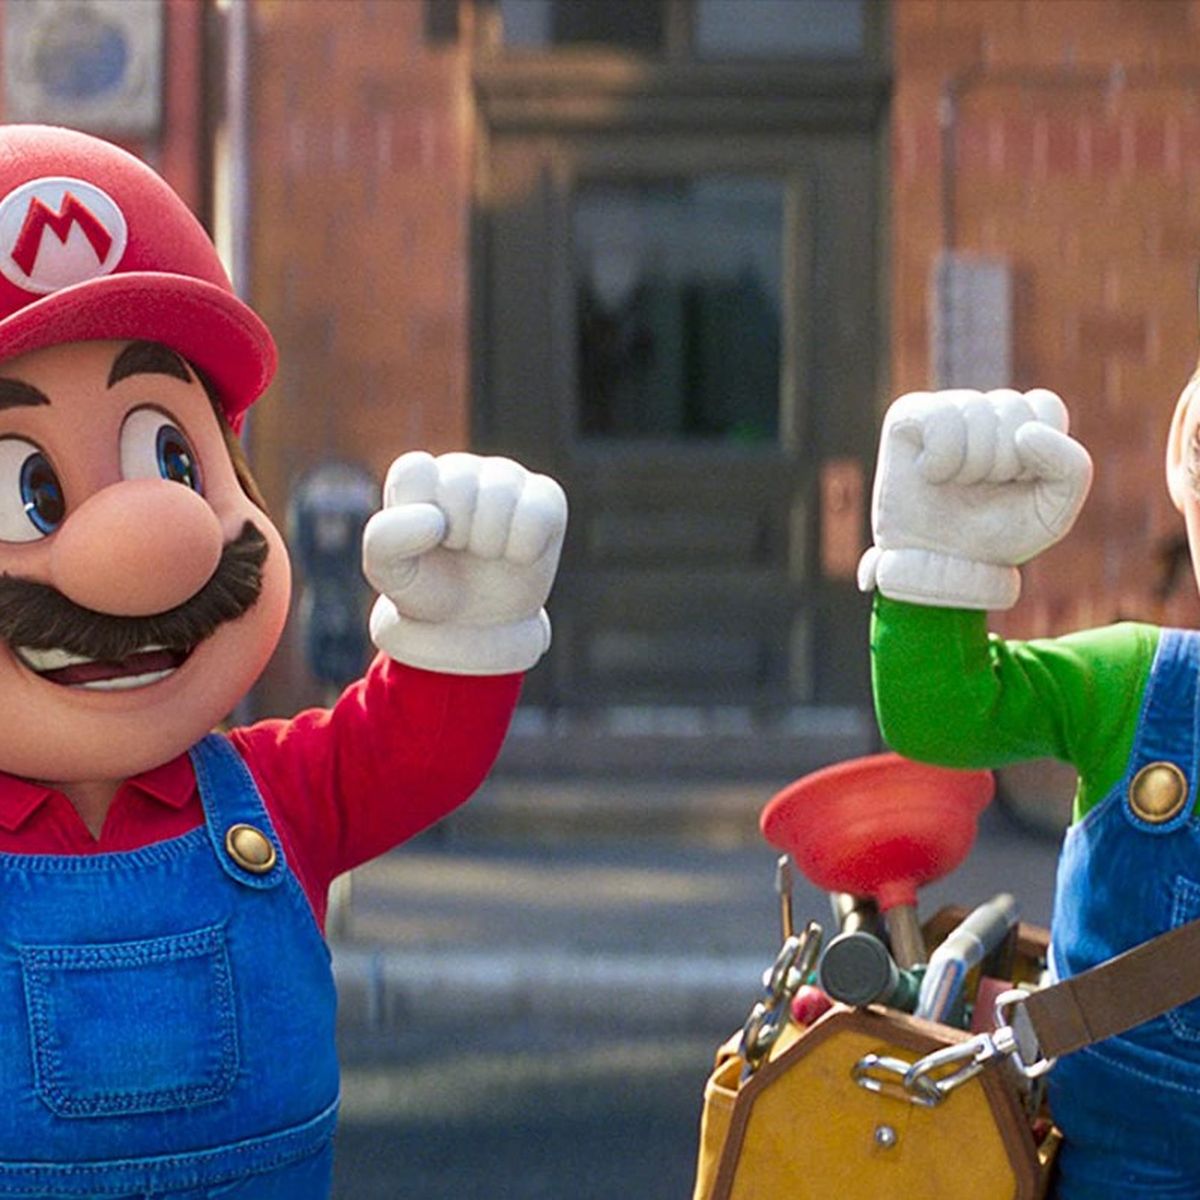 Crítica de Super Mario Bros. La película, el próximo taquillazo familiar